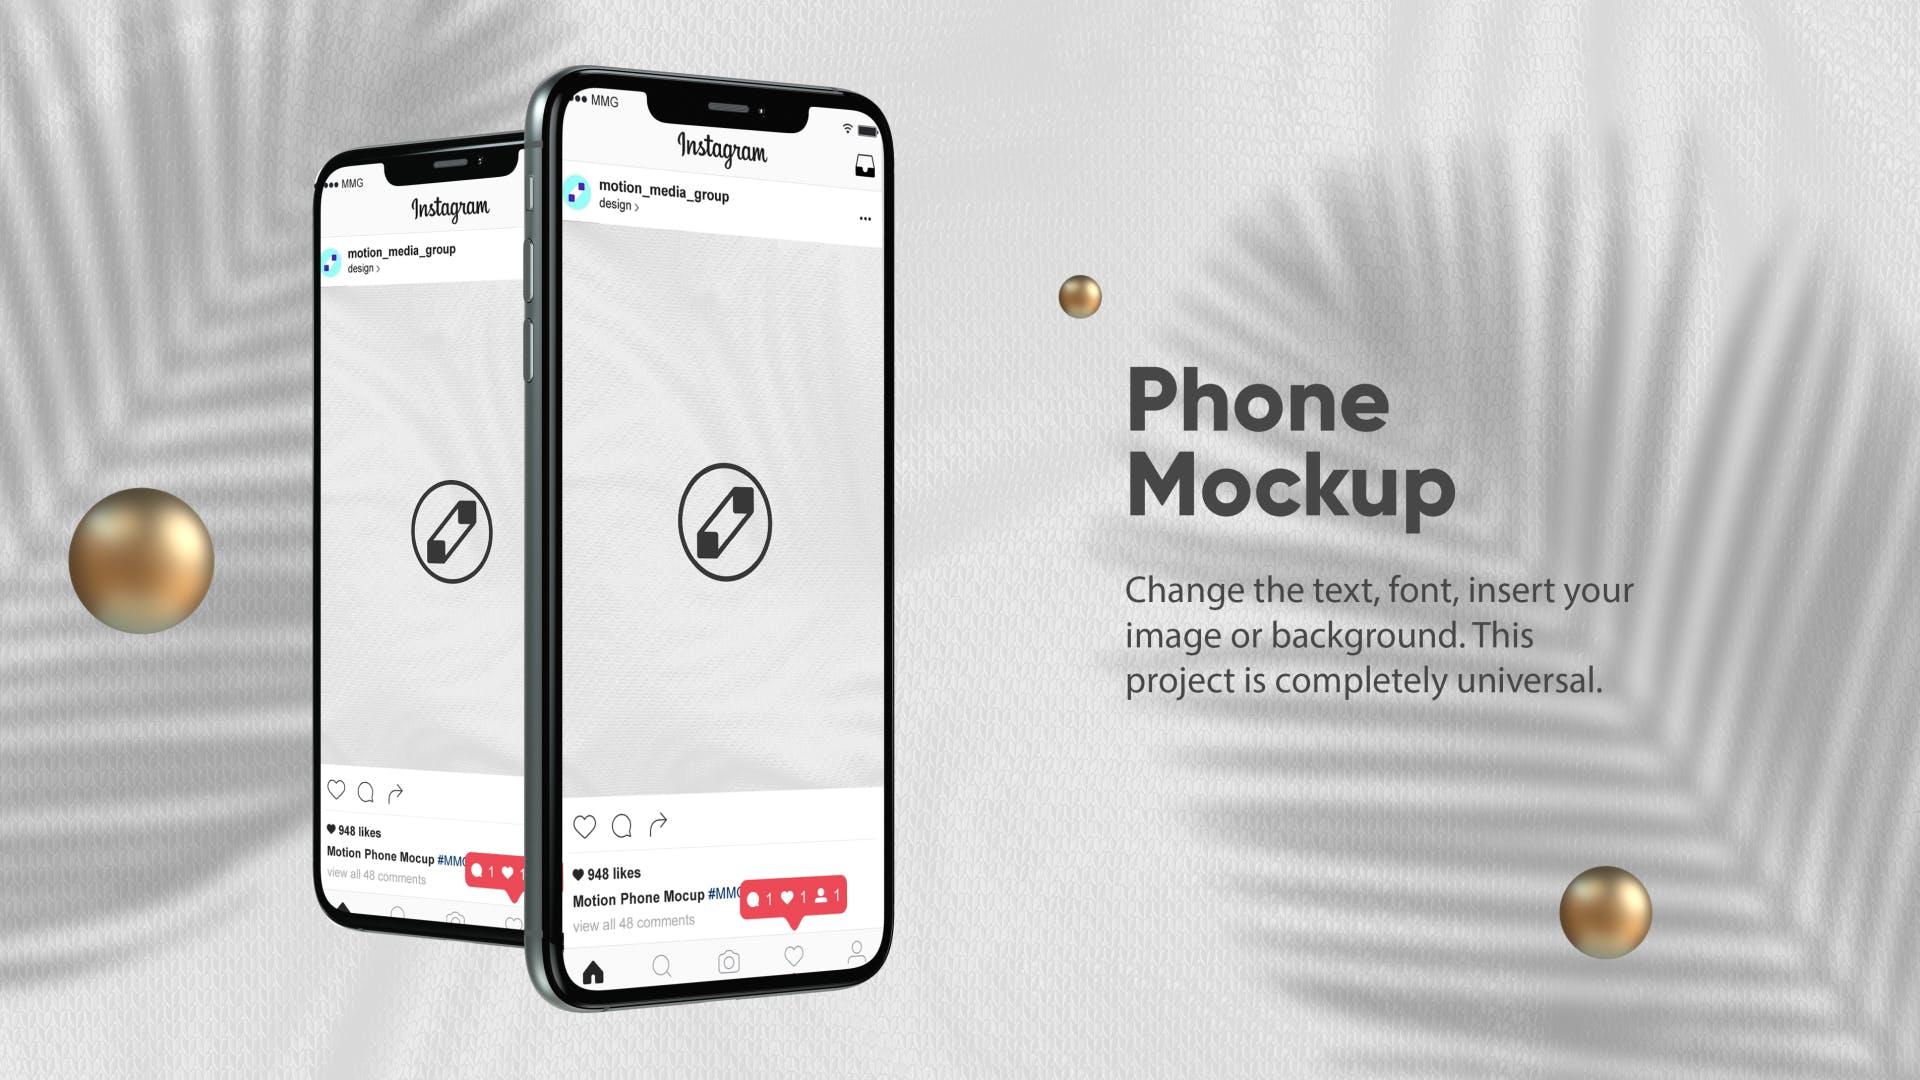 优雅时尚风格3D立体风格iPhone手机屏幕预览蚂蚁素材精选样机 10 Light Phone Mockups插图(2)